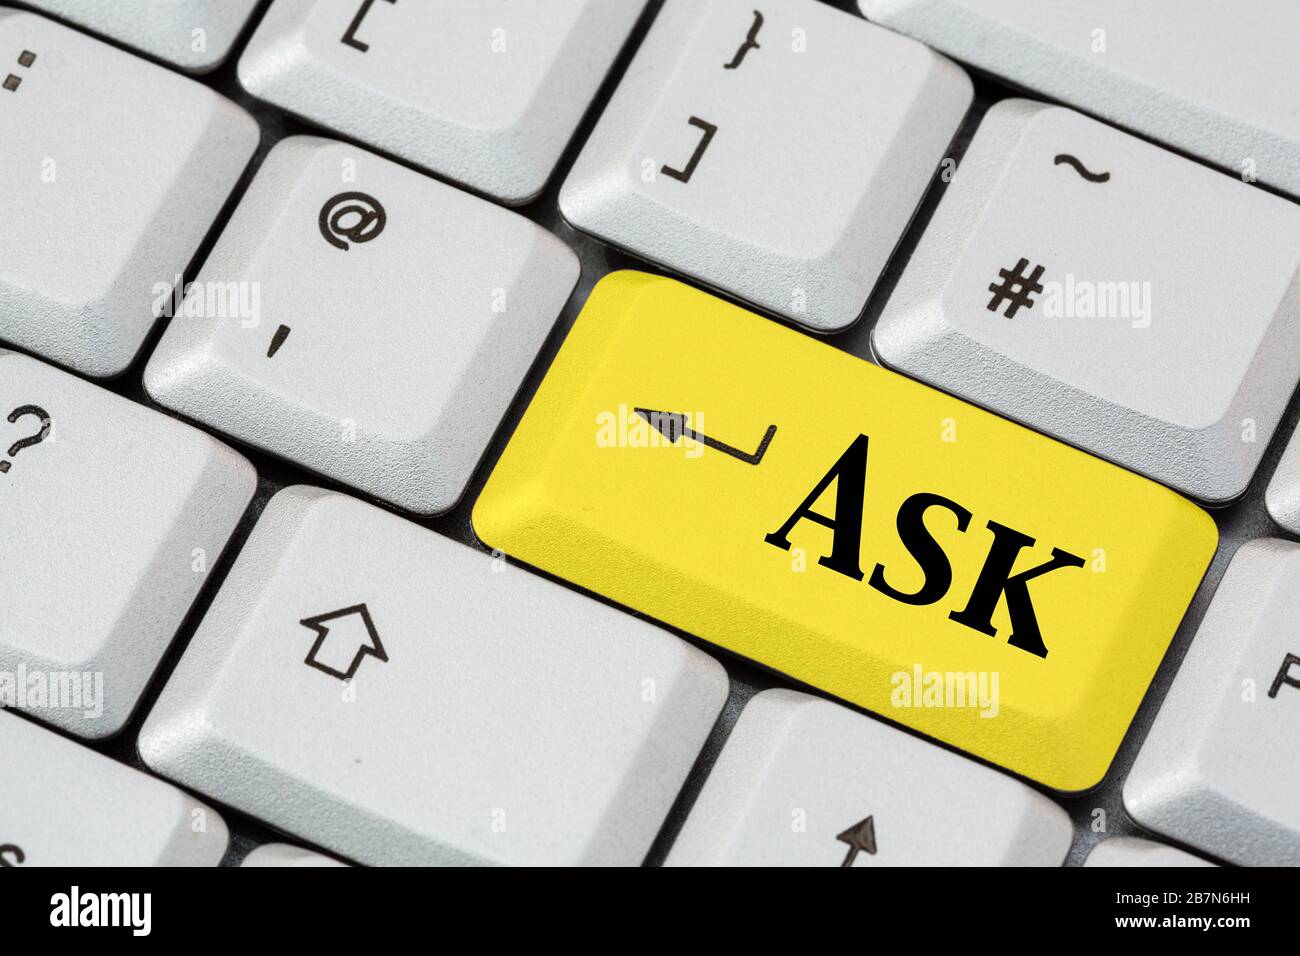 Una tastiera con la parola Ask scritta in nero su un tasto giallo invio. Concetto di Search Engine. Inghilterra, Regno Unito, Gran Bretagna Foto Stock